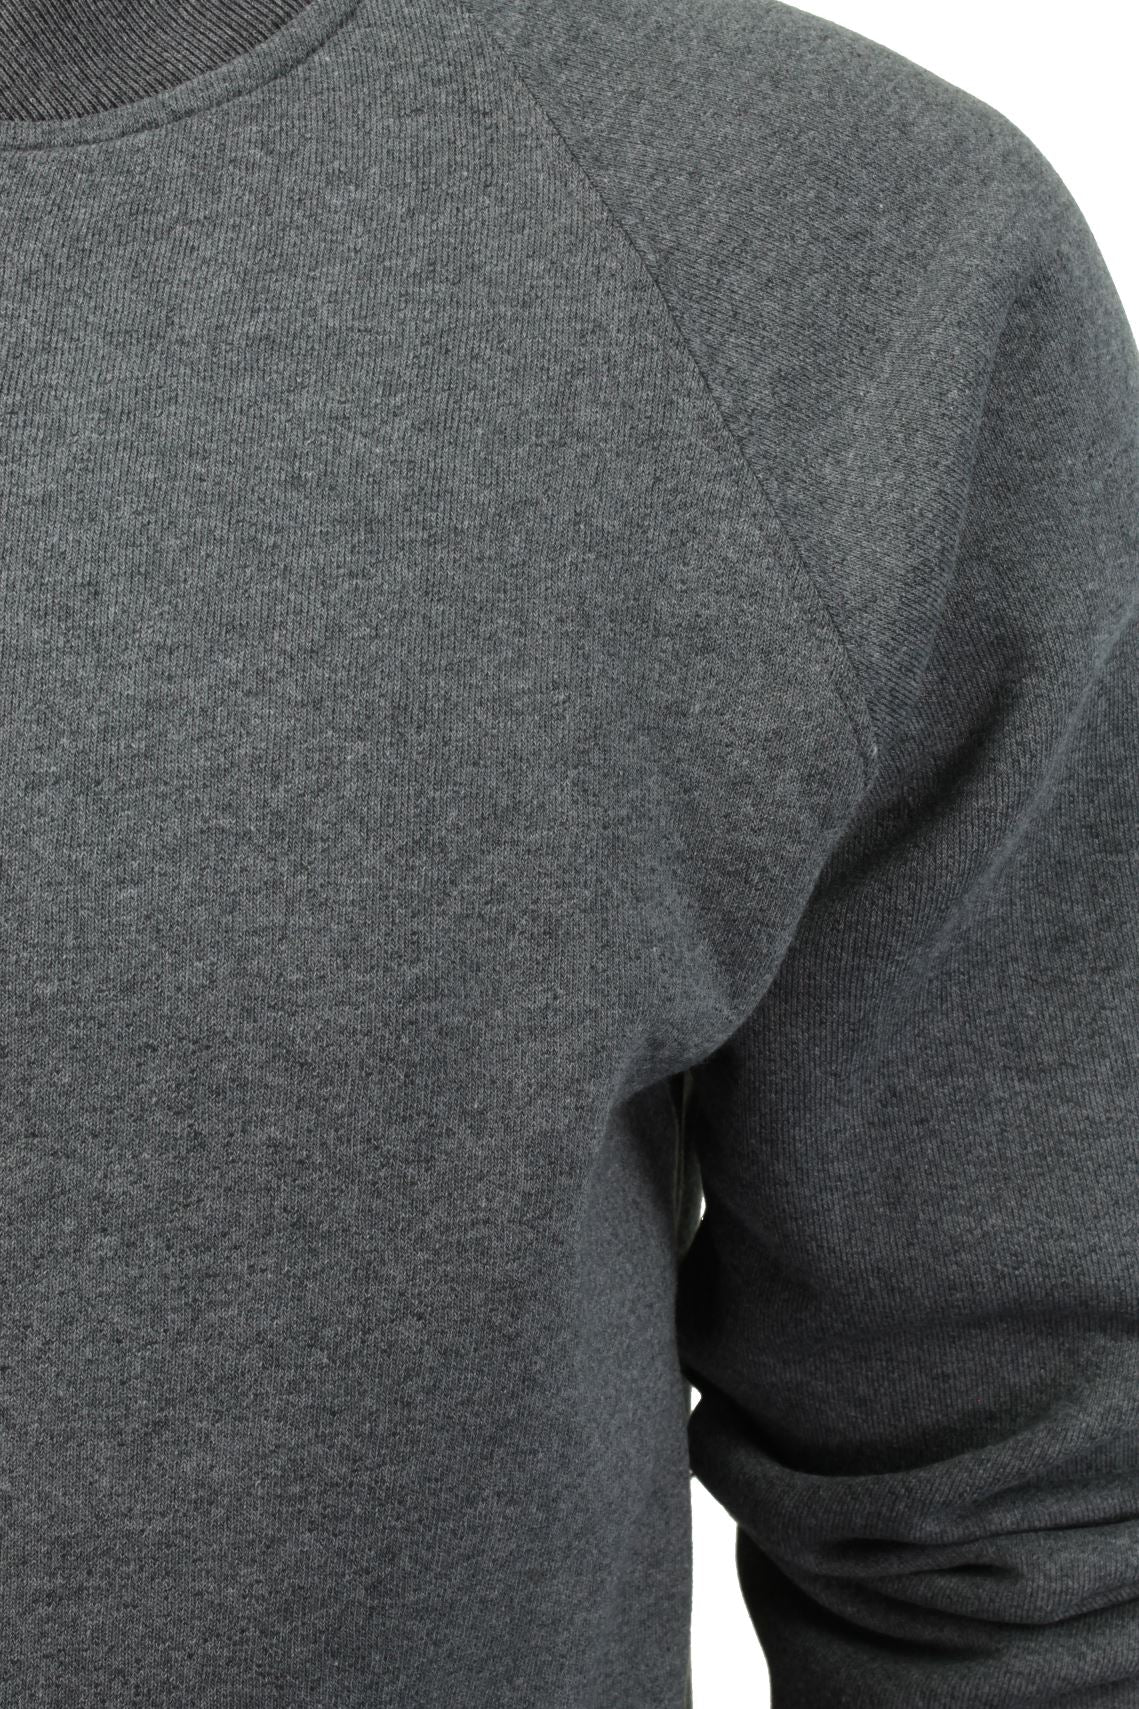 Mens Zip Through Sweatshirt Jumper by Xact Long Sleeved (Dark Grey)-2